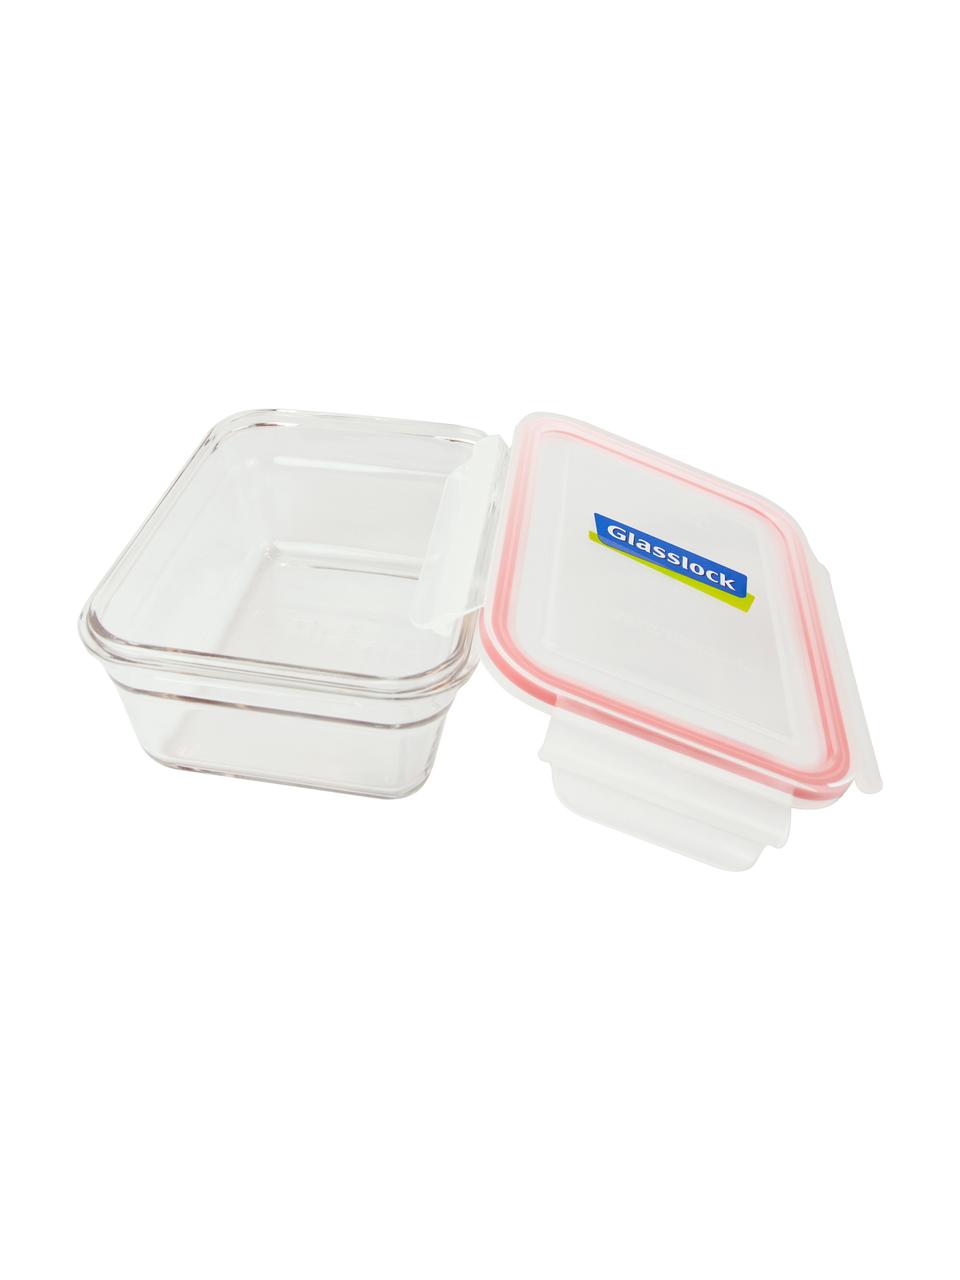 Krabice na potraviny Bea, 2 ks, Transparentní, růžová, Š 18 cm, V 7 cm